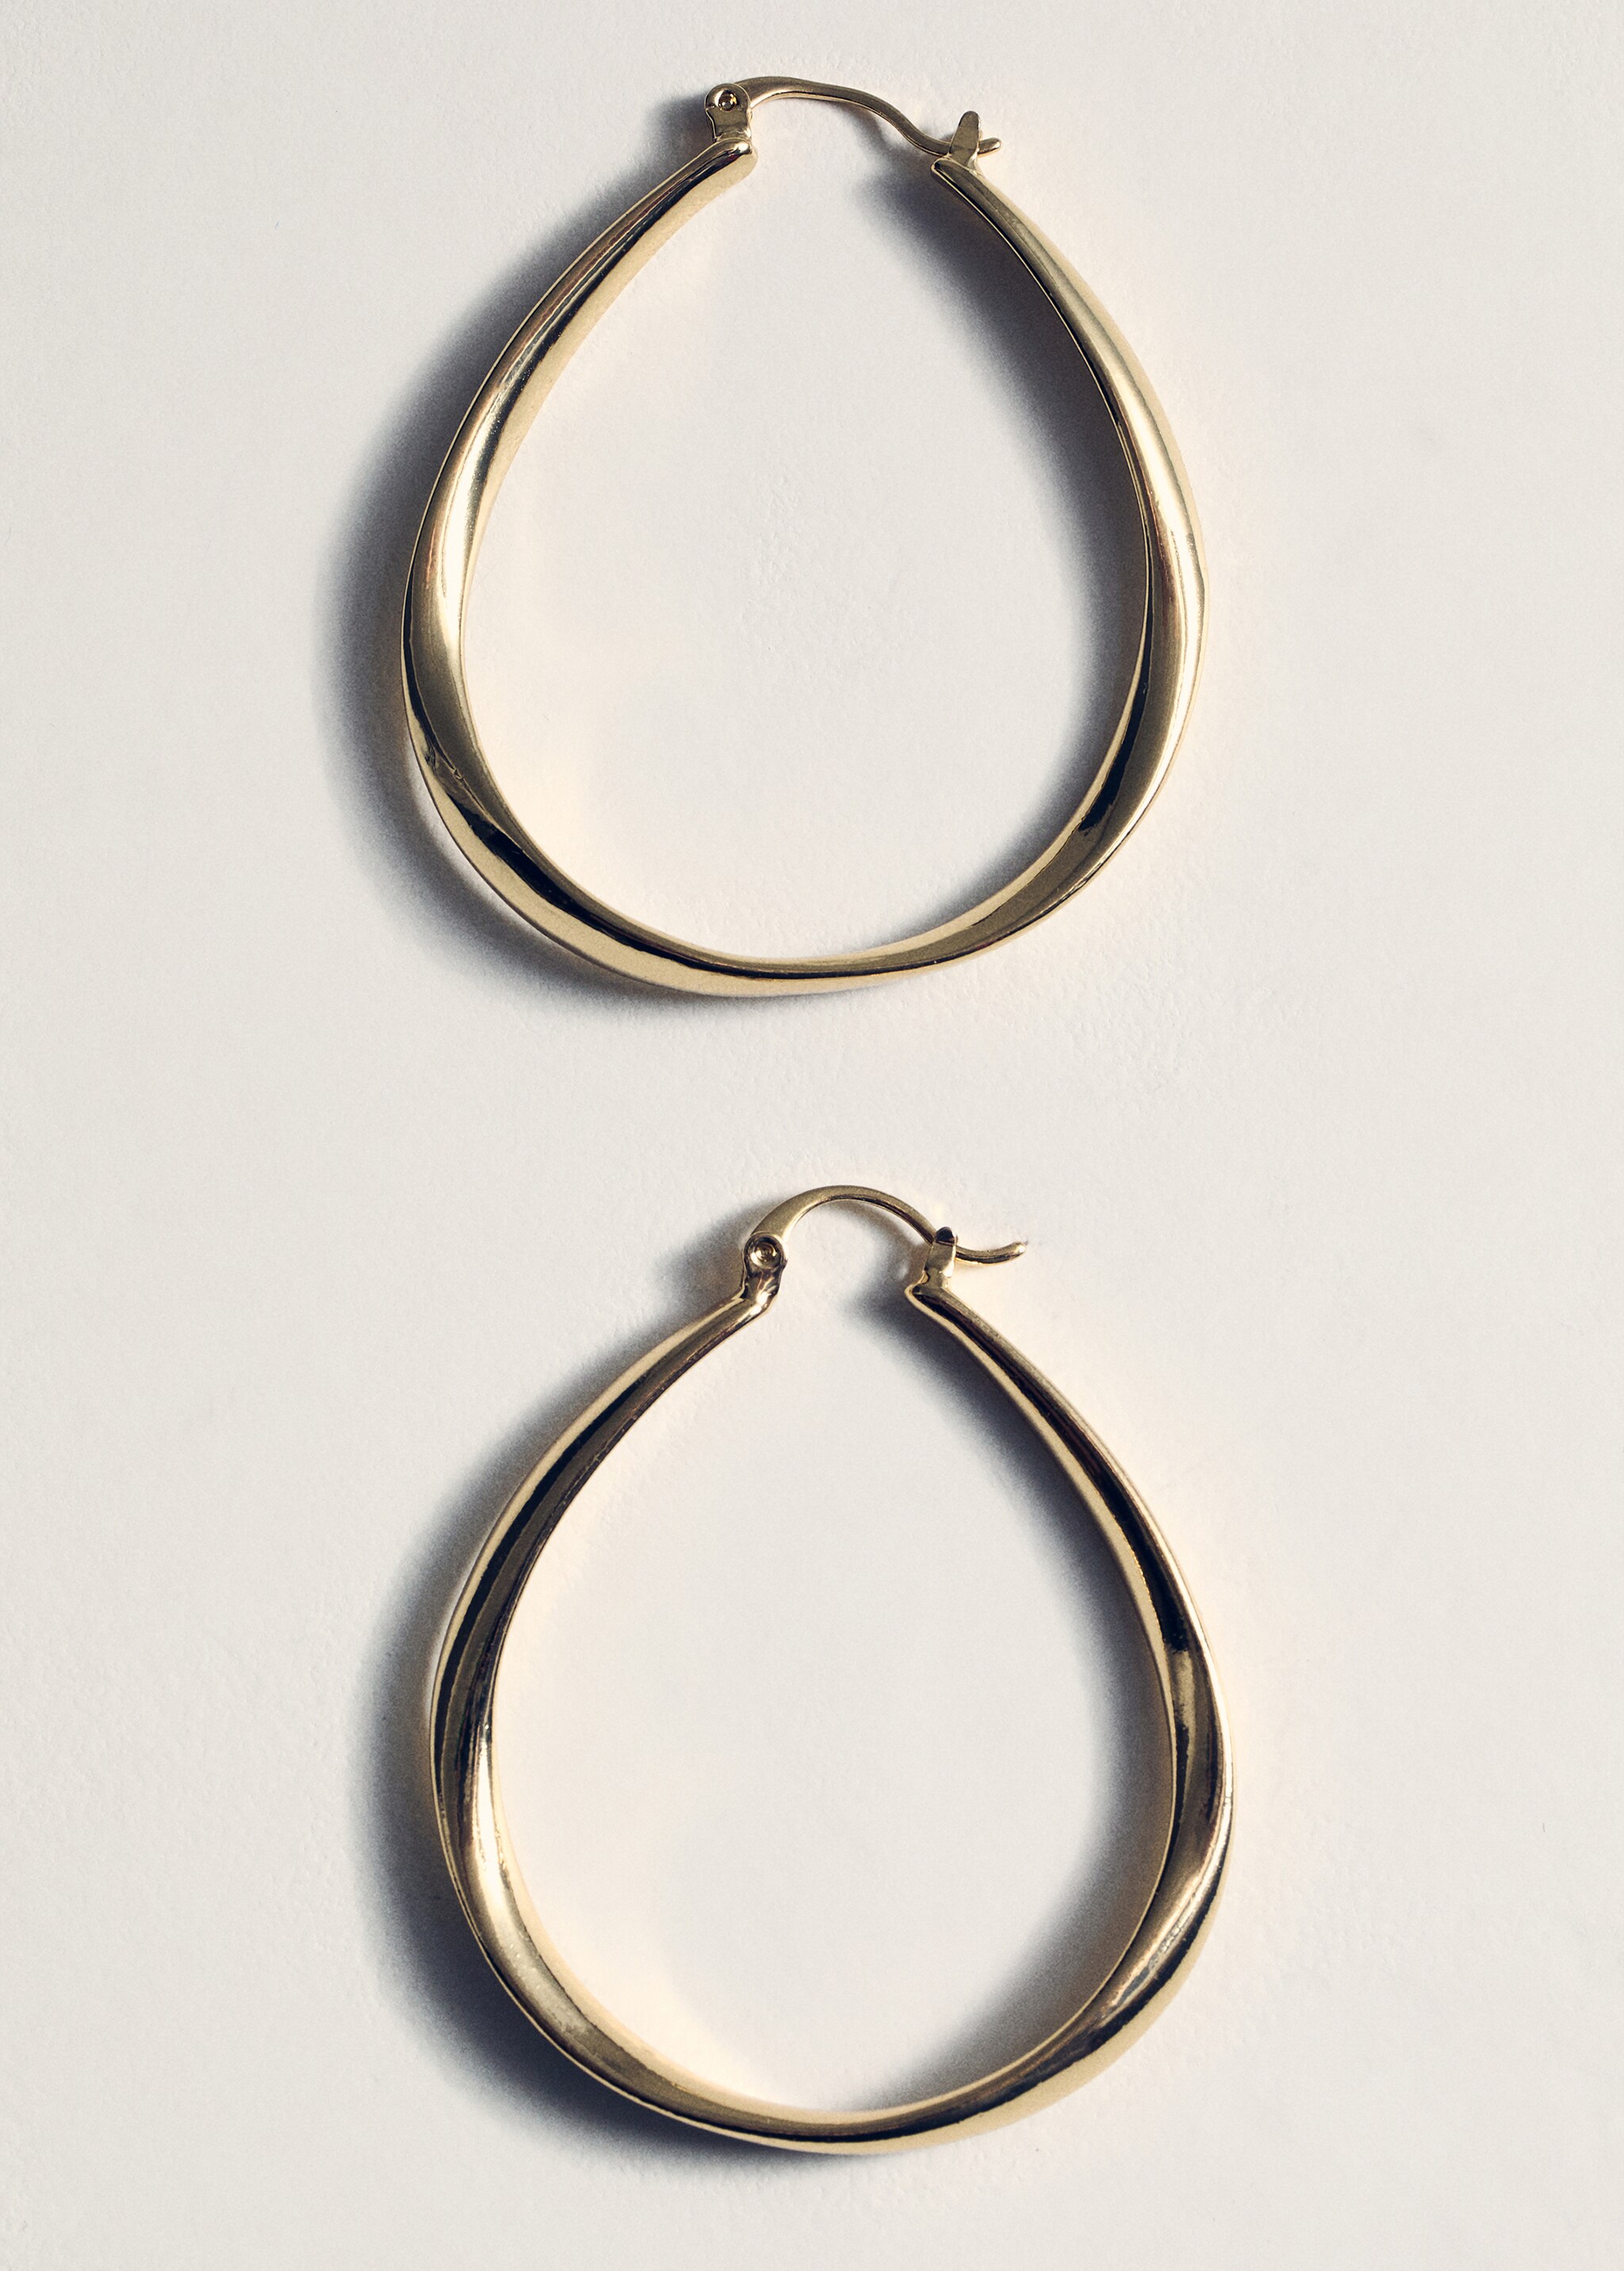 Oval hoop earrings - Details of the article 5